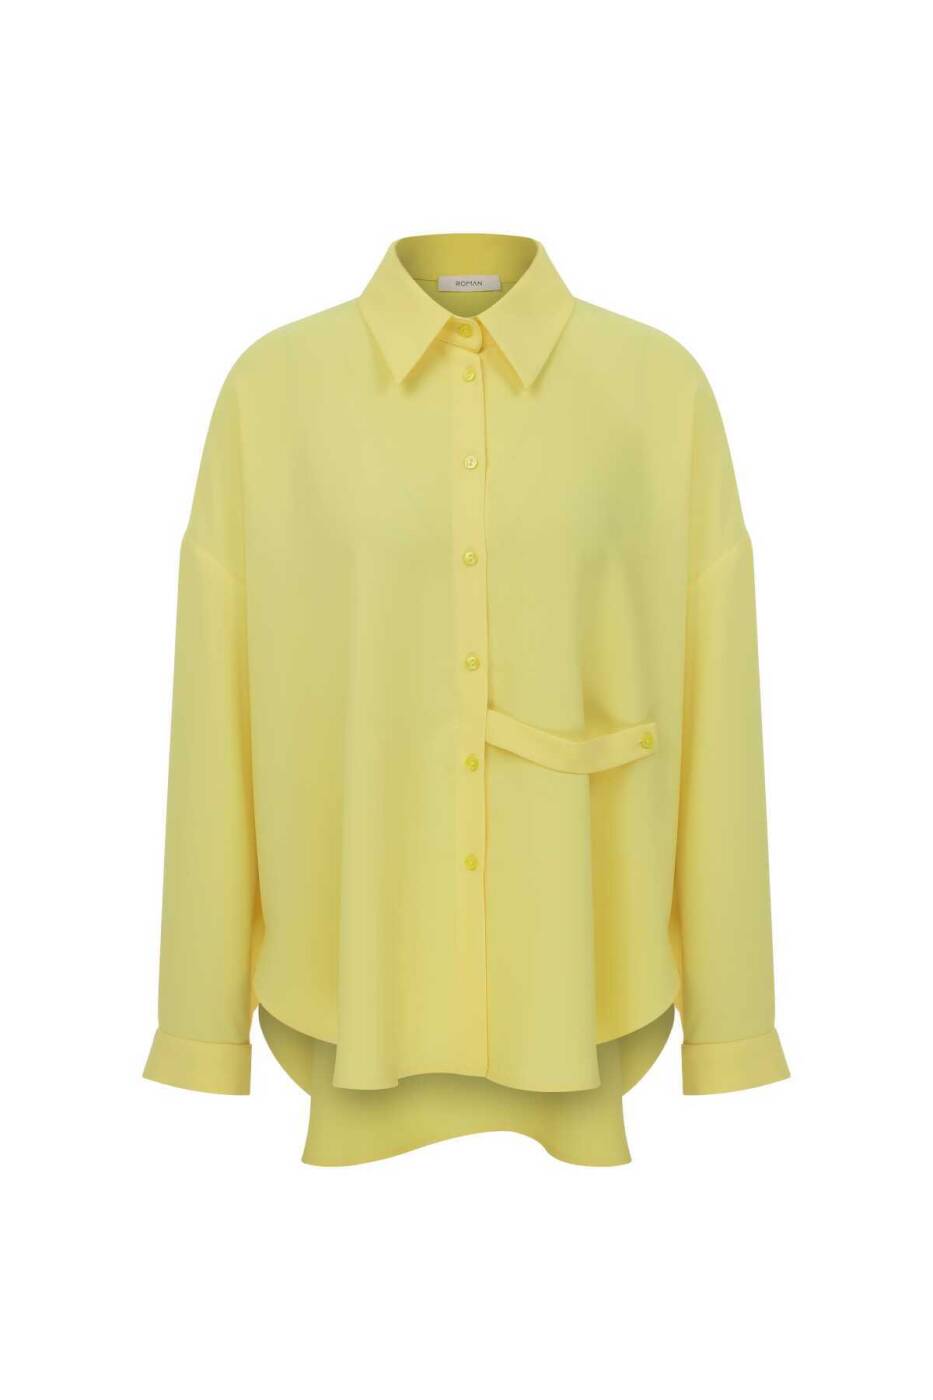  Bağlama Detaylı Krep Gömlek Sarı - 4